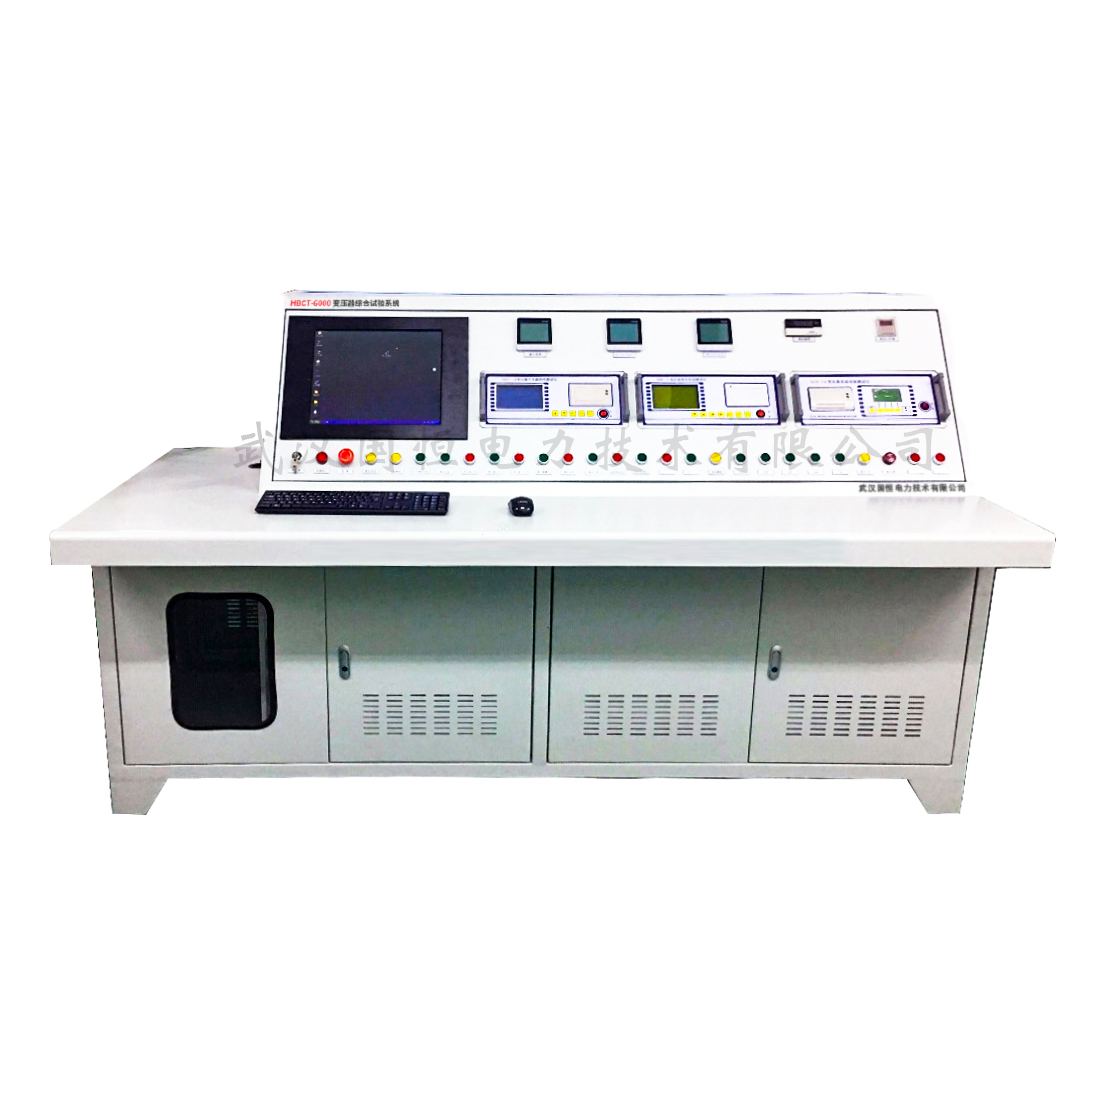 13.HBCT-6000变压器综合试验系统